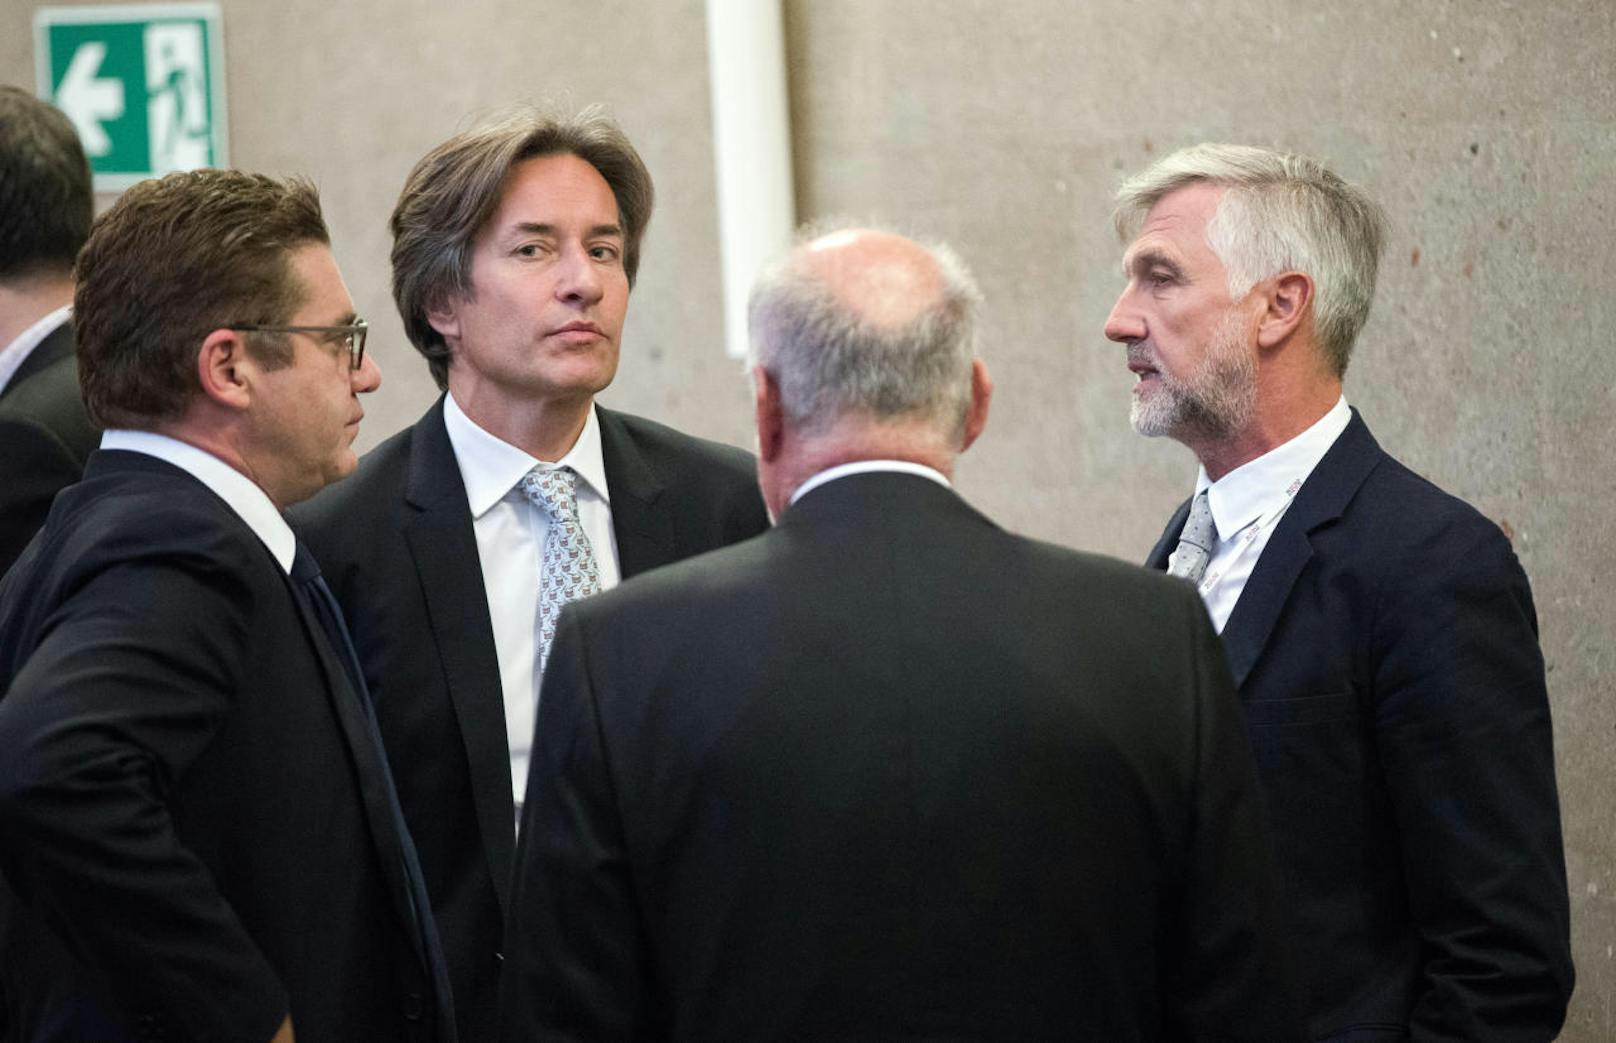 vlnr.: Anwalt Jörg Zarbl, Angeklagter Karl Heinz Grasser, Anwalt Manfred Ainedter und Angeklagter Walter Meischberger.